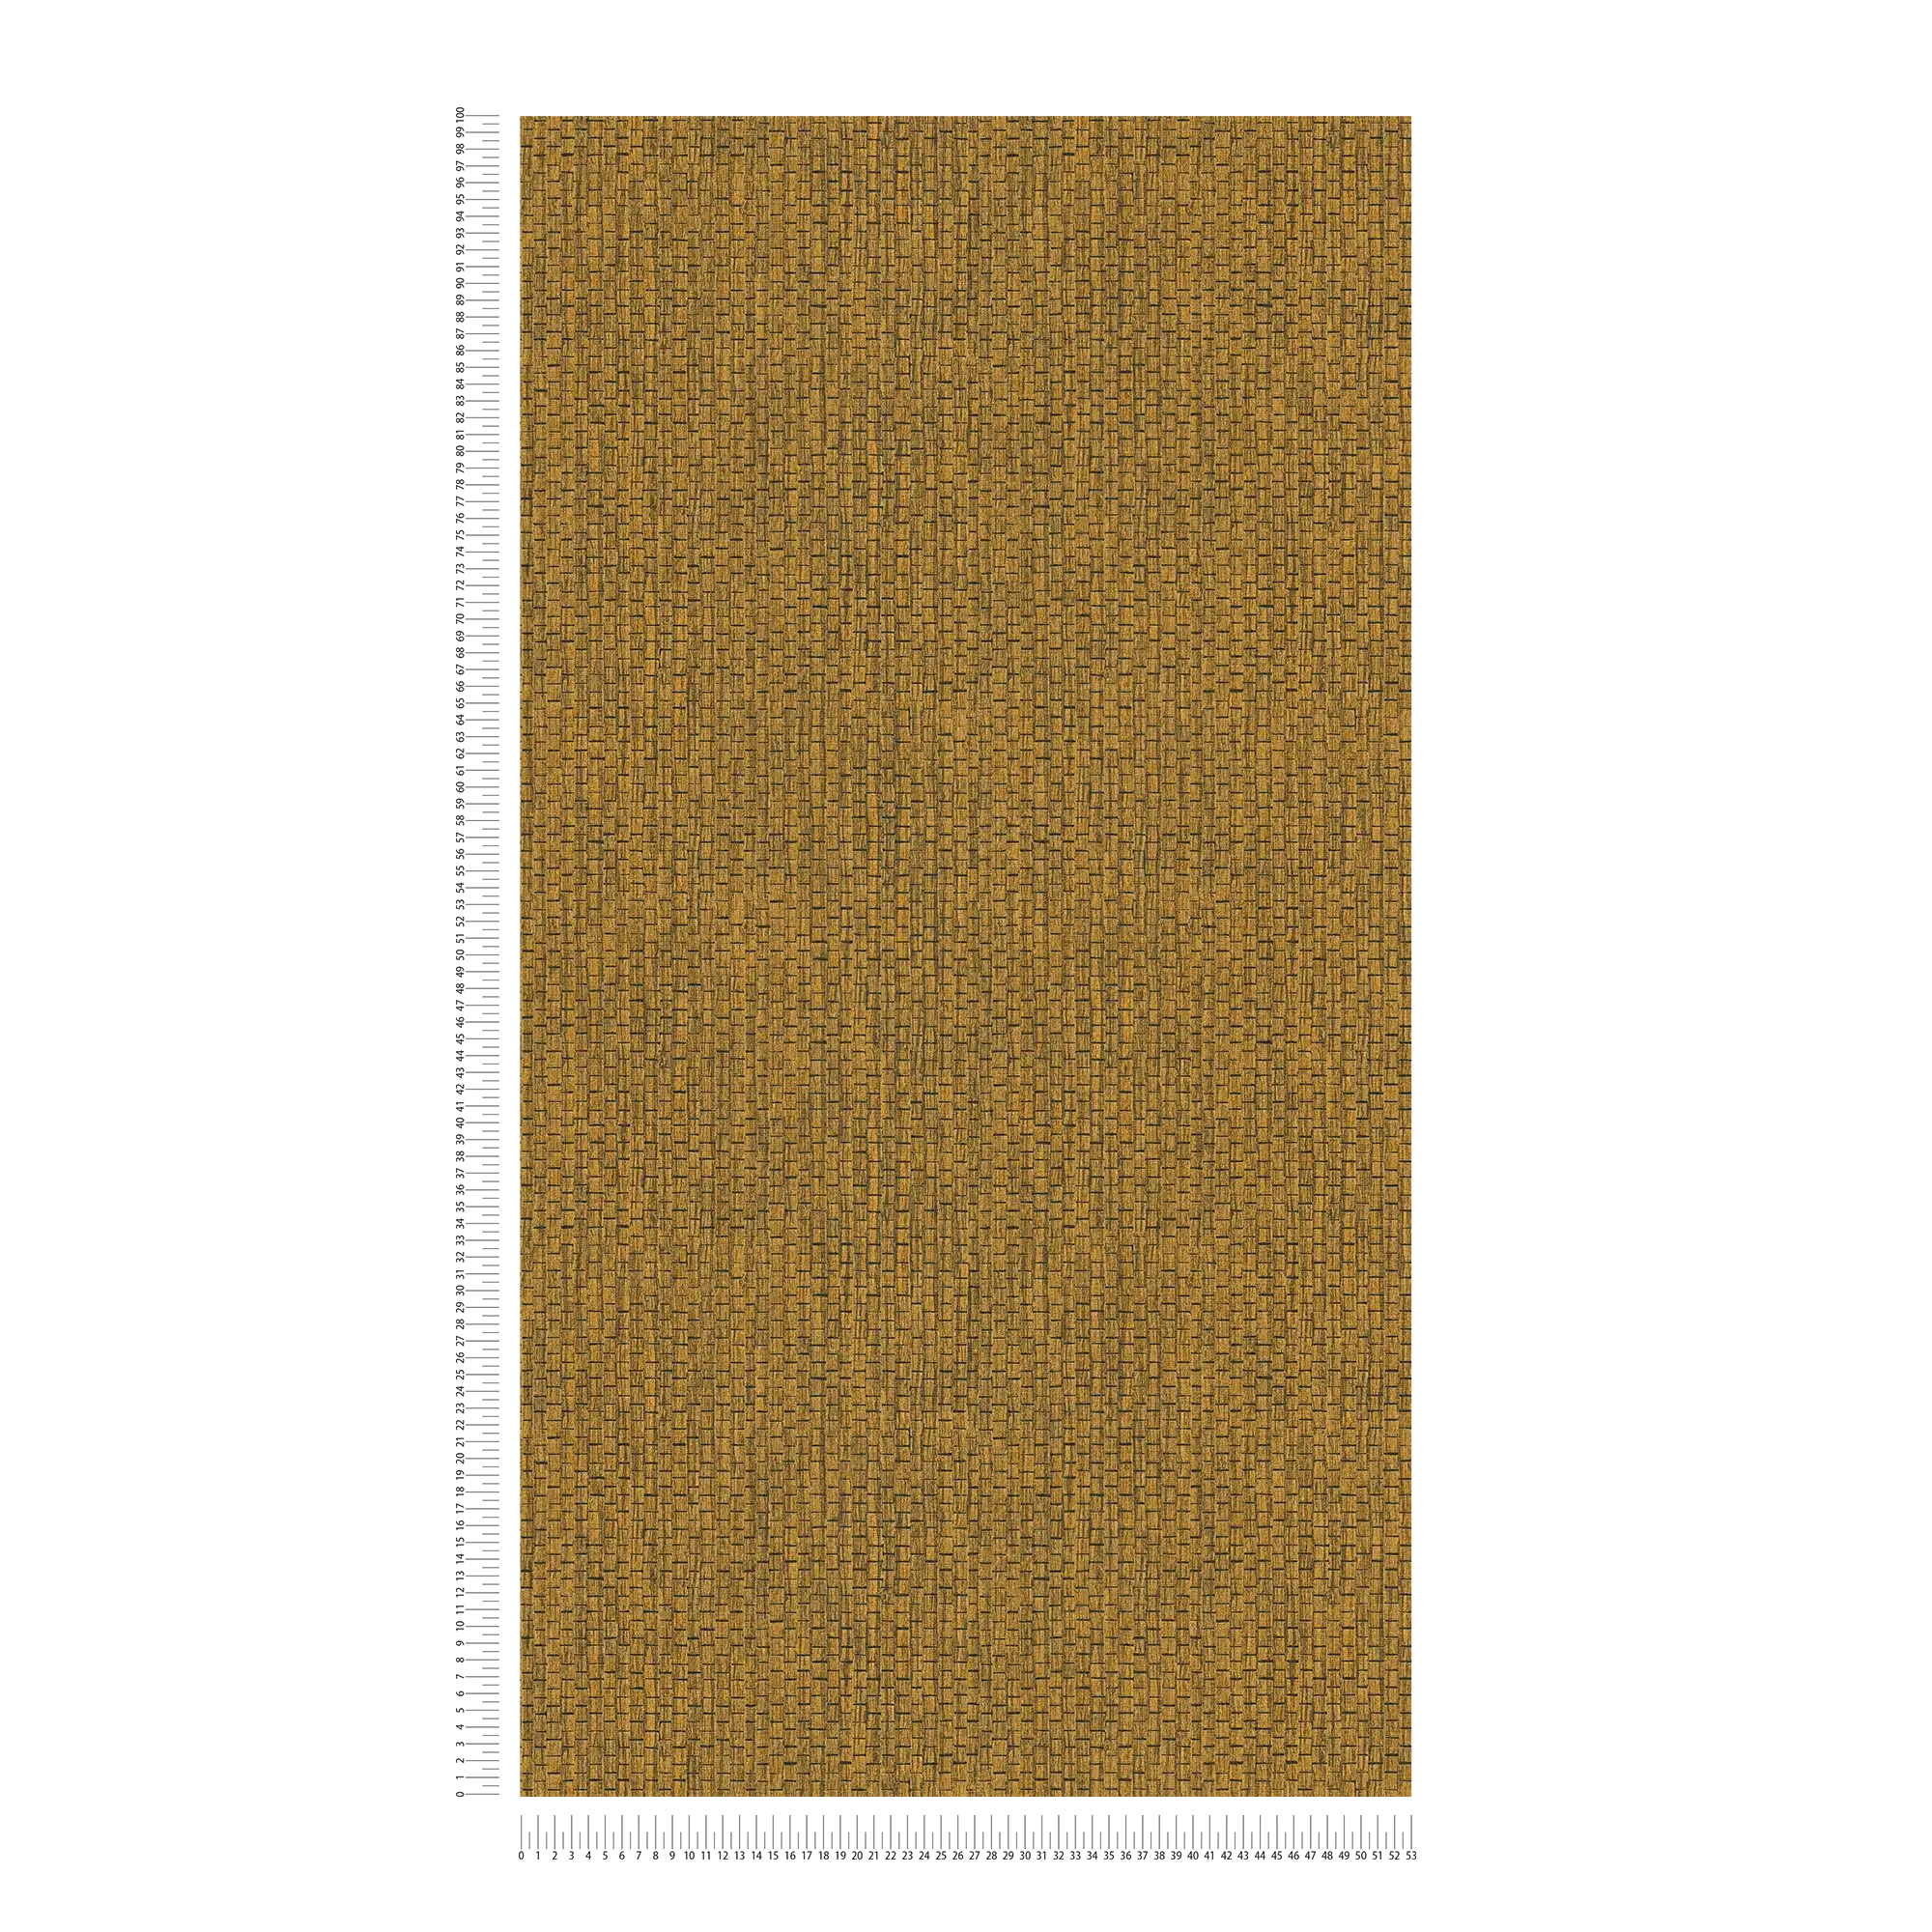             Papier peint avec design de tapis de raphia - marron, jaune
        